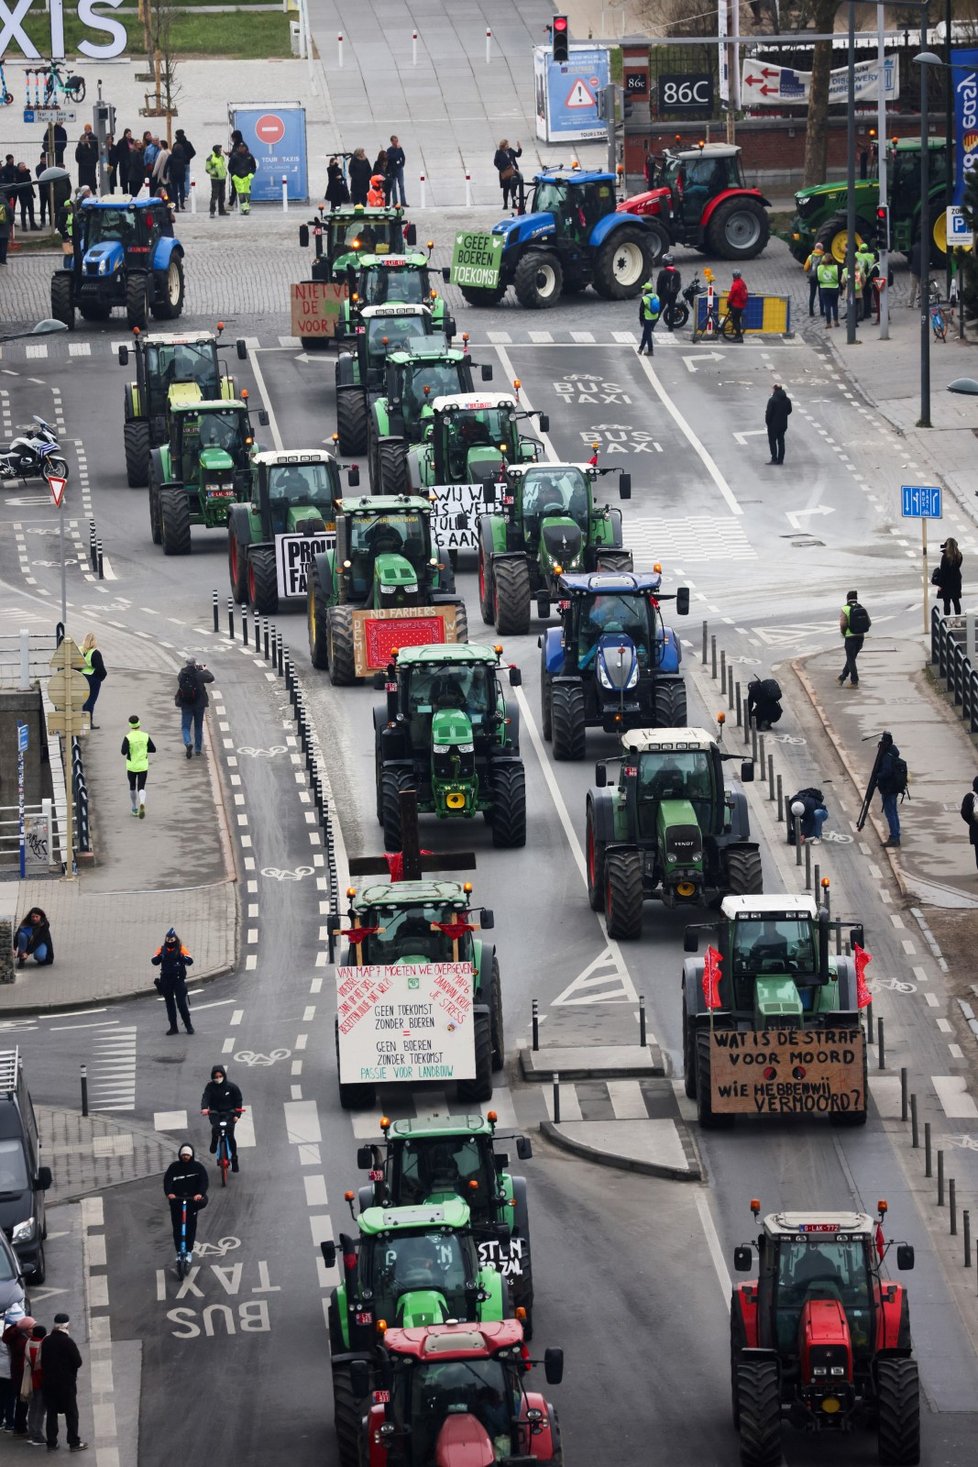 Brusel zablokovaly skoro 3000 traktorů, farmáři brojí proti snižování emisí (3. 3. 2023).